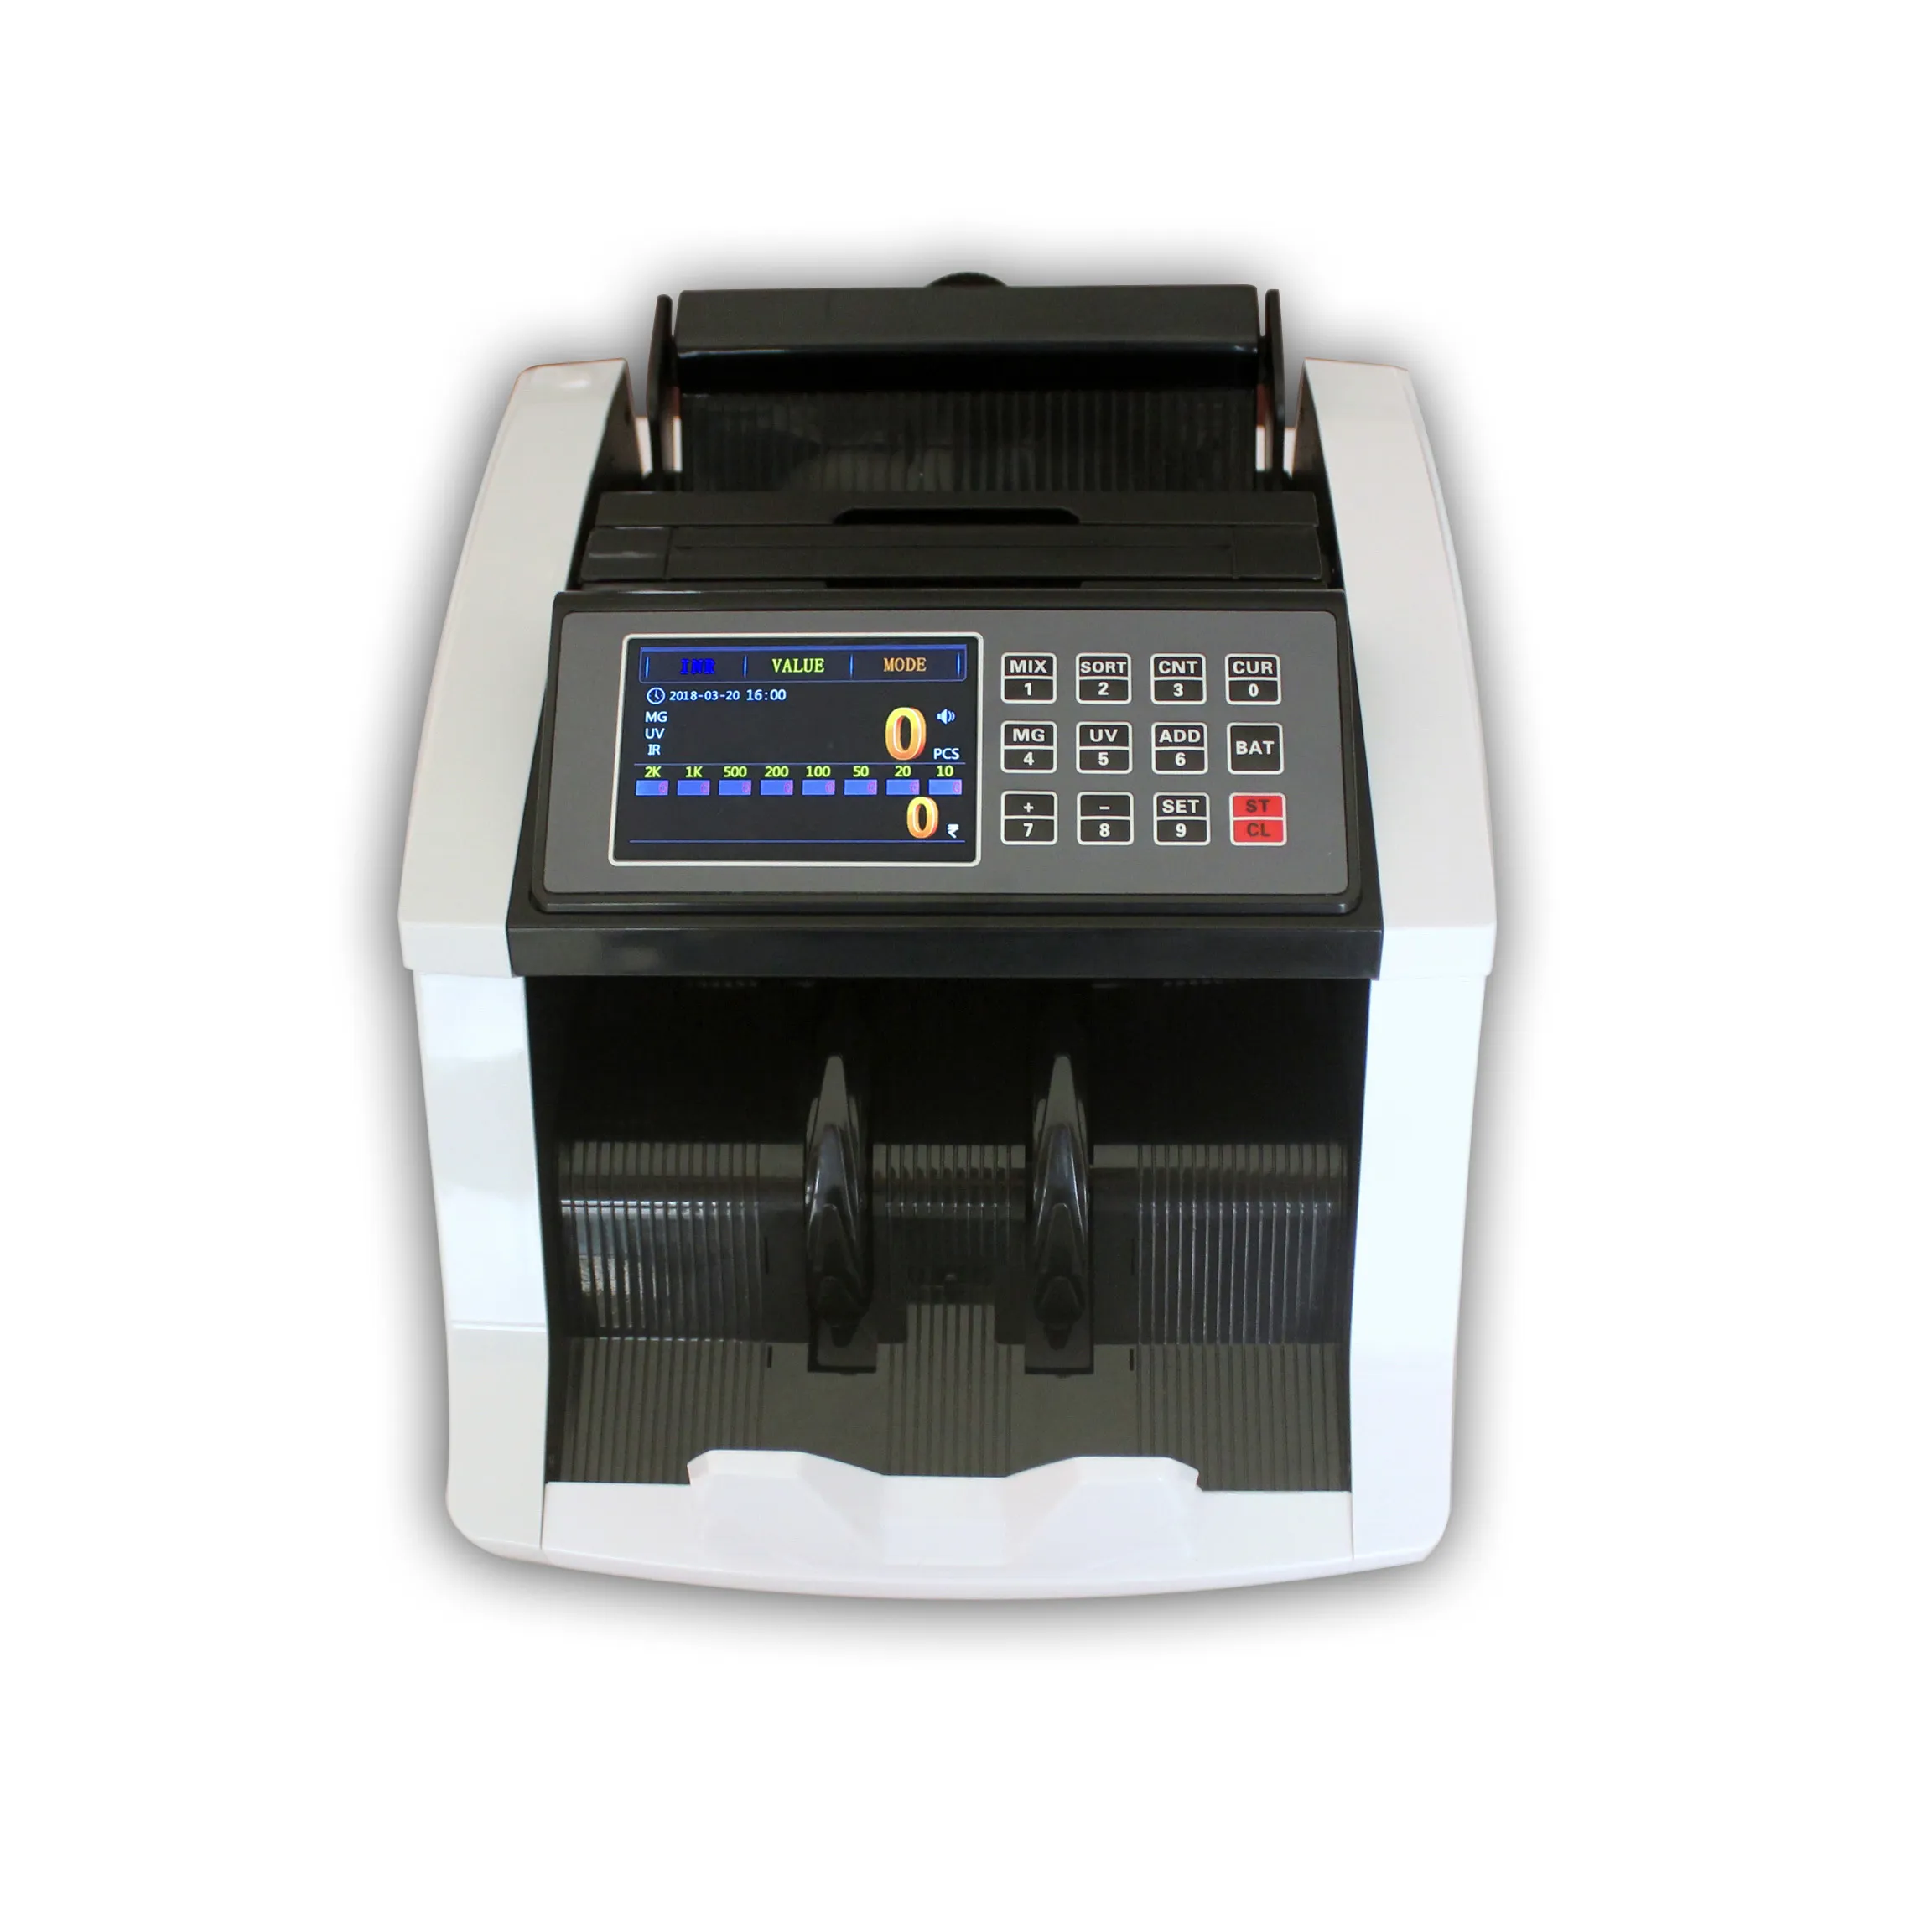 UNION WL-C11 ЖК-дисплей детектор денежных банкнот счетчик машины от общей стоимости функция вычисления для Индии